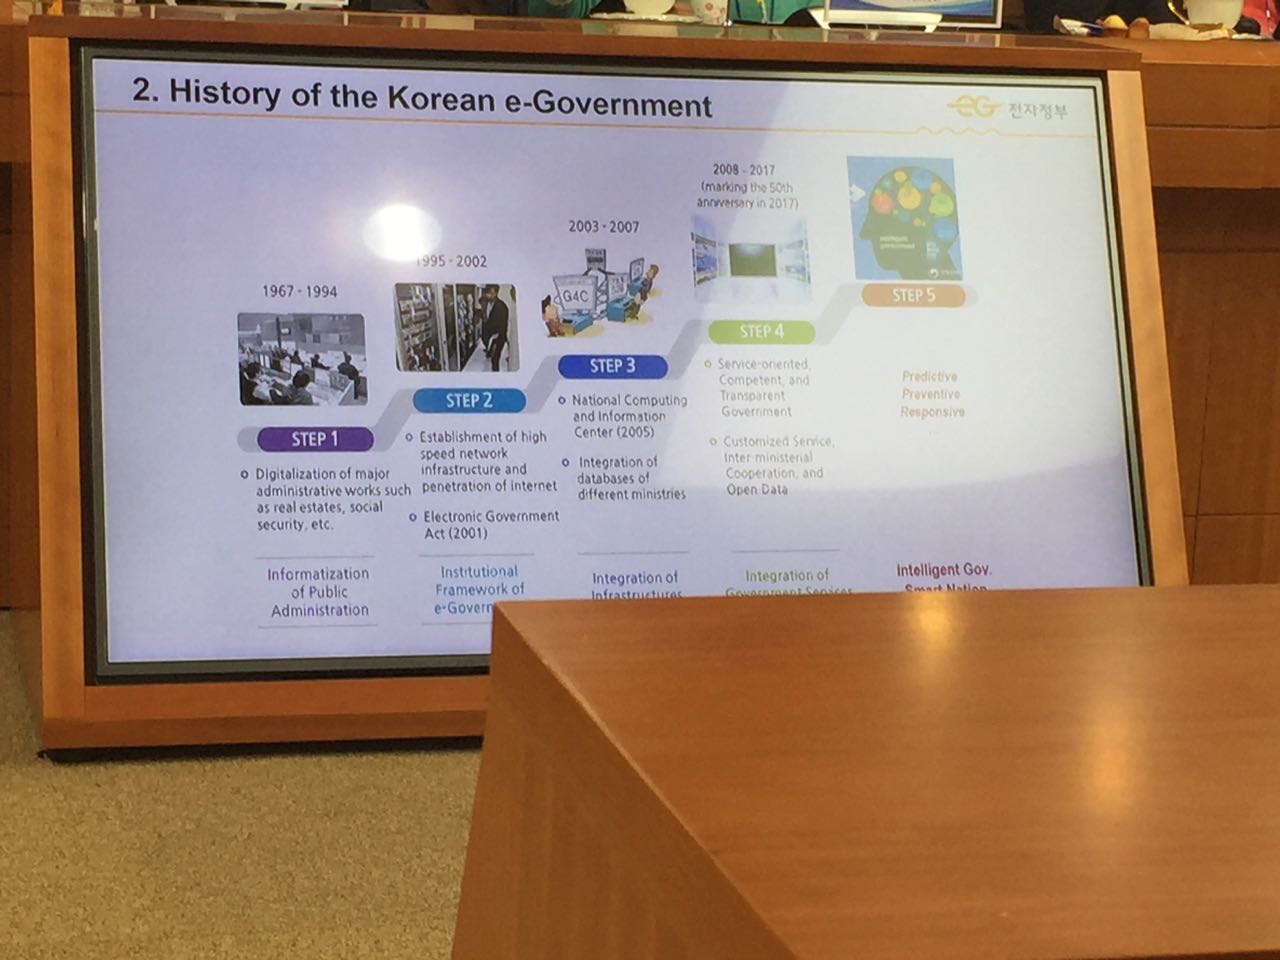 Historia del _e-Government_ coreano